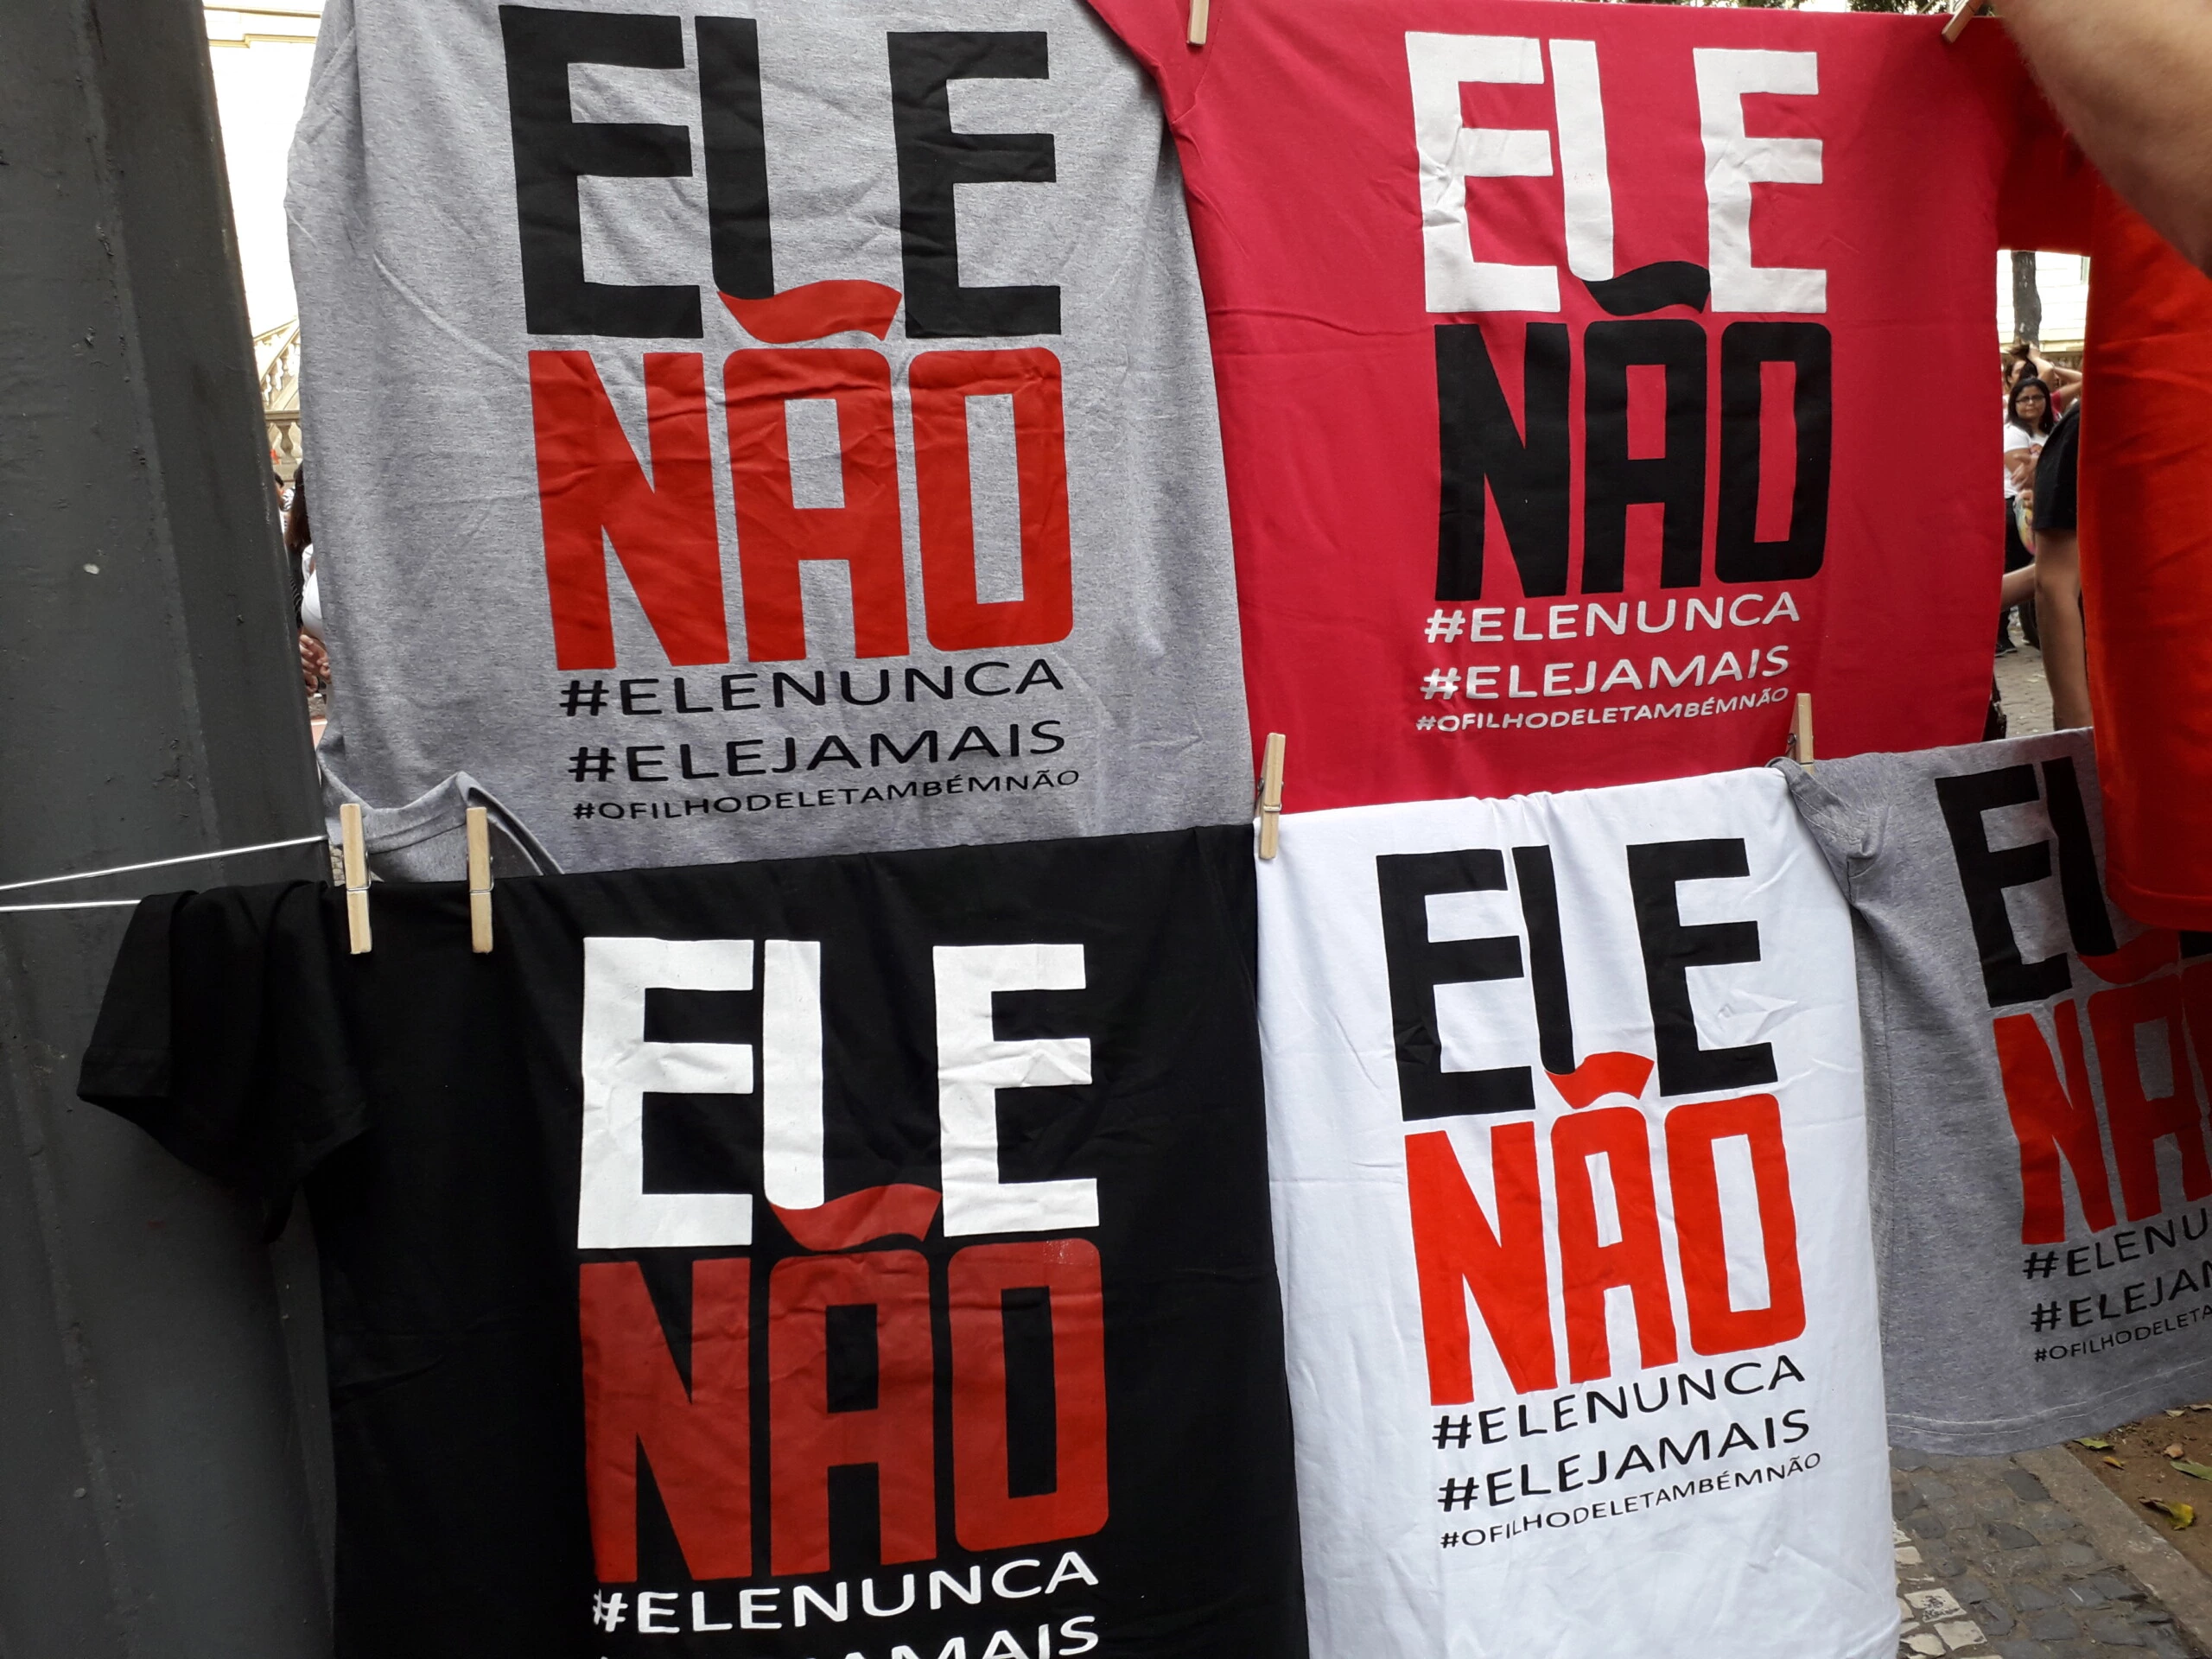 Camisetas à venda em protesto contra Bolsonaro, na Cinelândia, no dia 29.